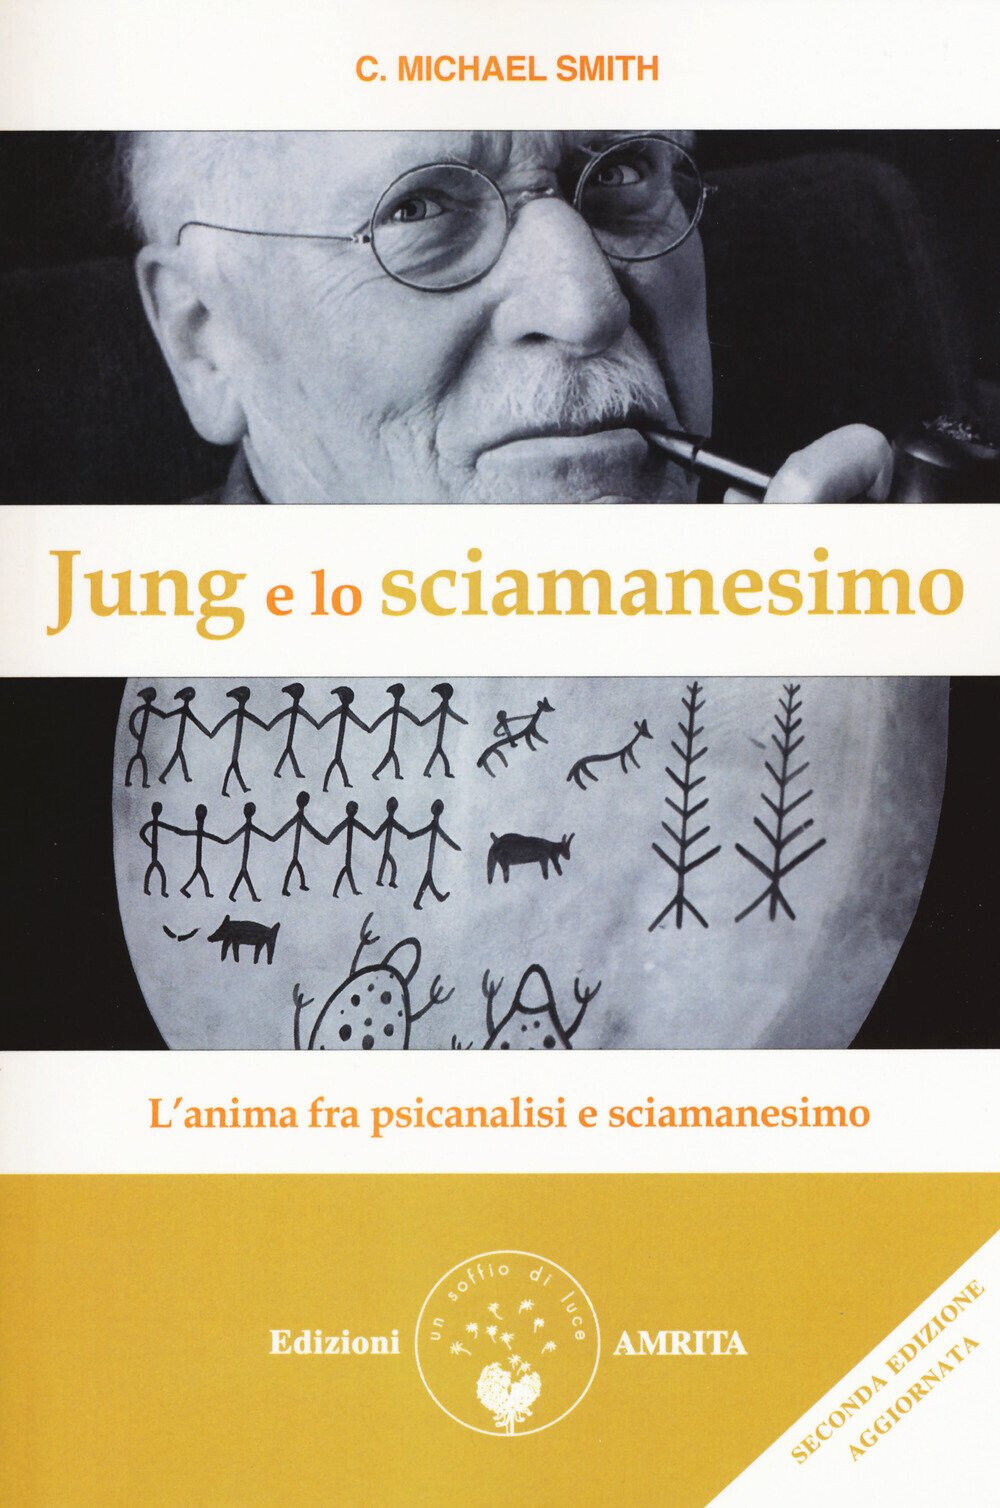 Jung e lo sciamanesimo -C. Michael Smith - Amrita, 2018